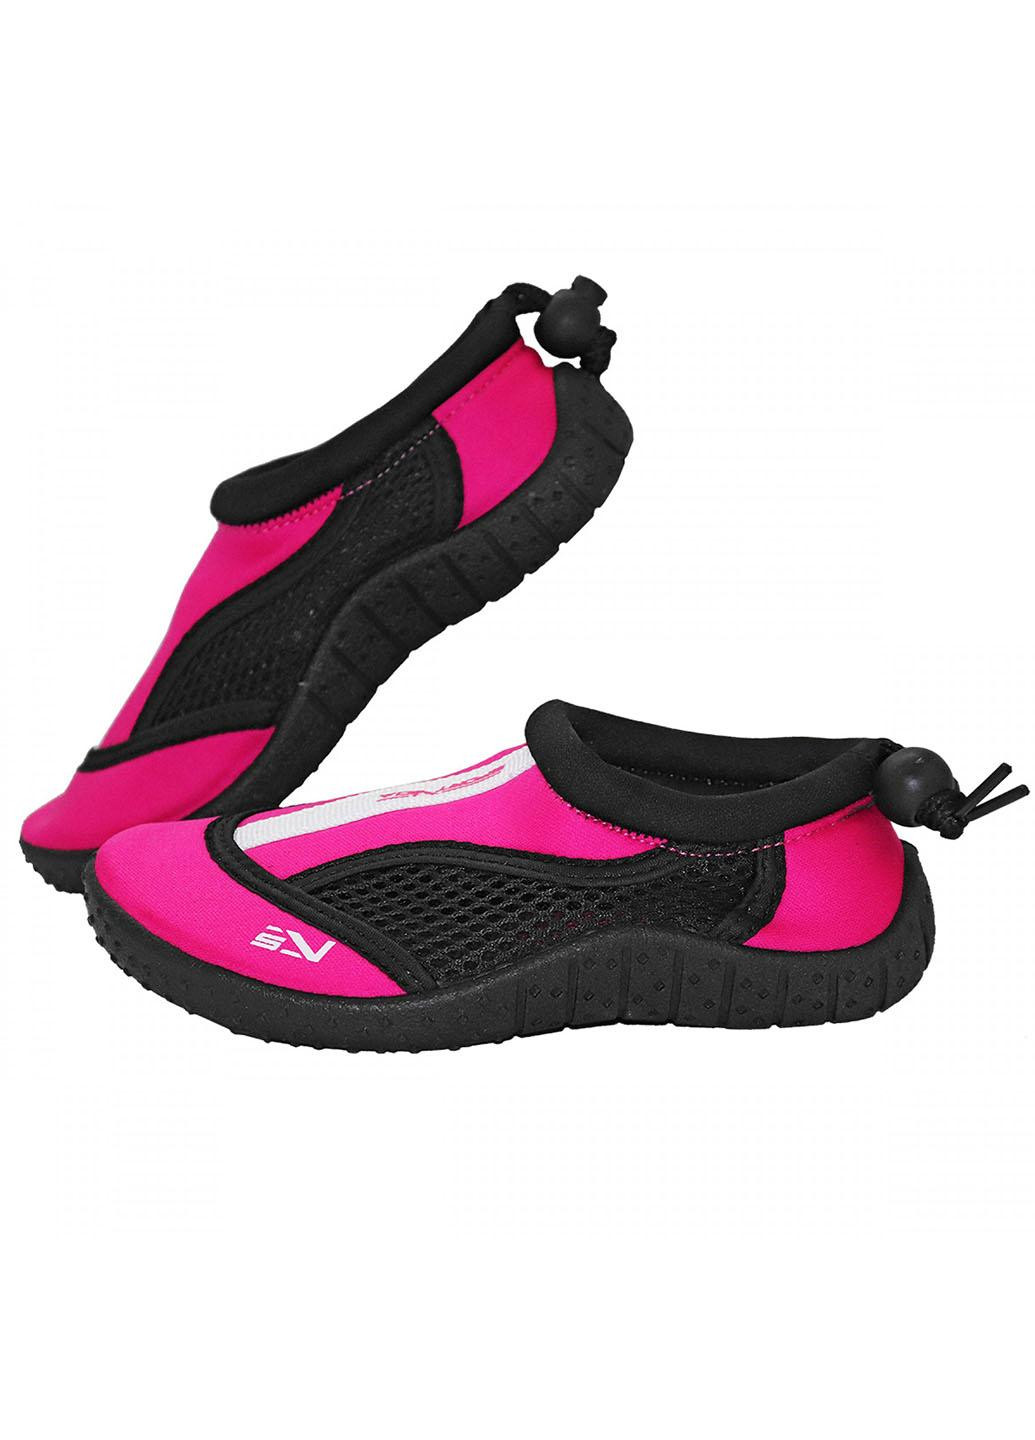 Обувь для пляжа и кораллов (аквашузы) SV-GY0001-R33 Size 33 Black/Pink SportVida (258486774)